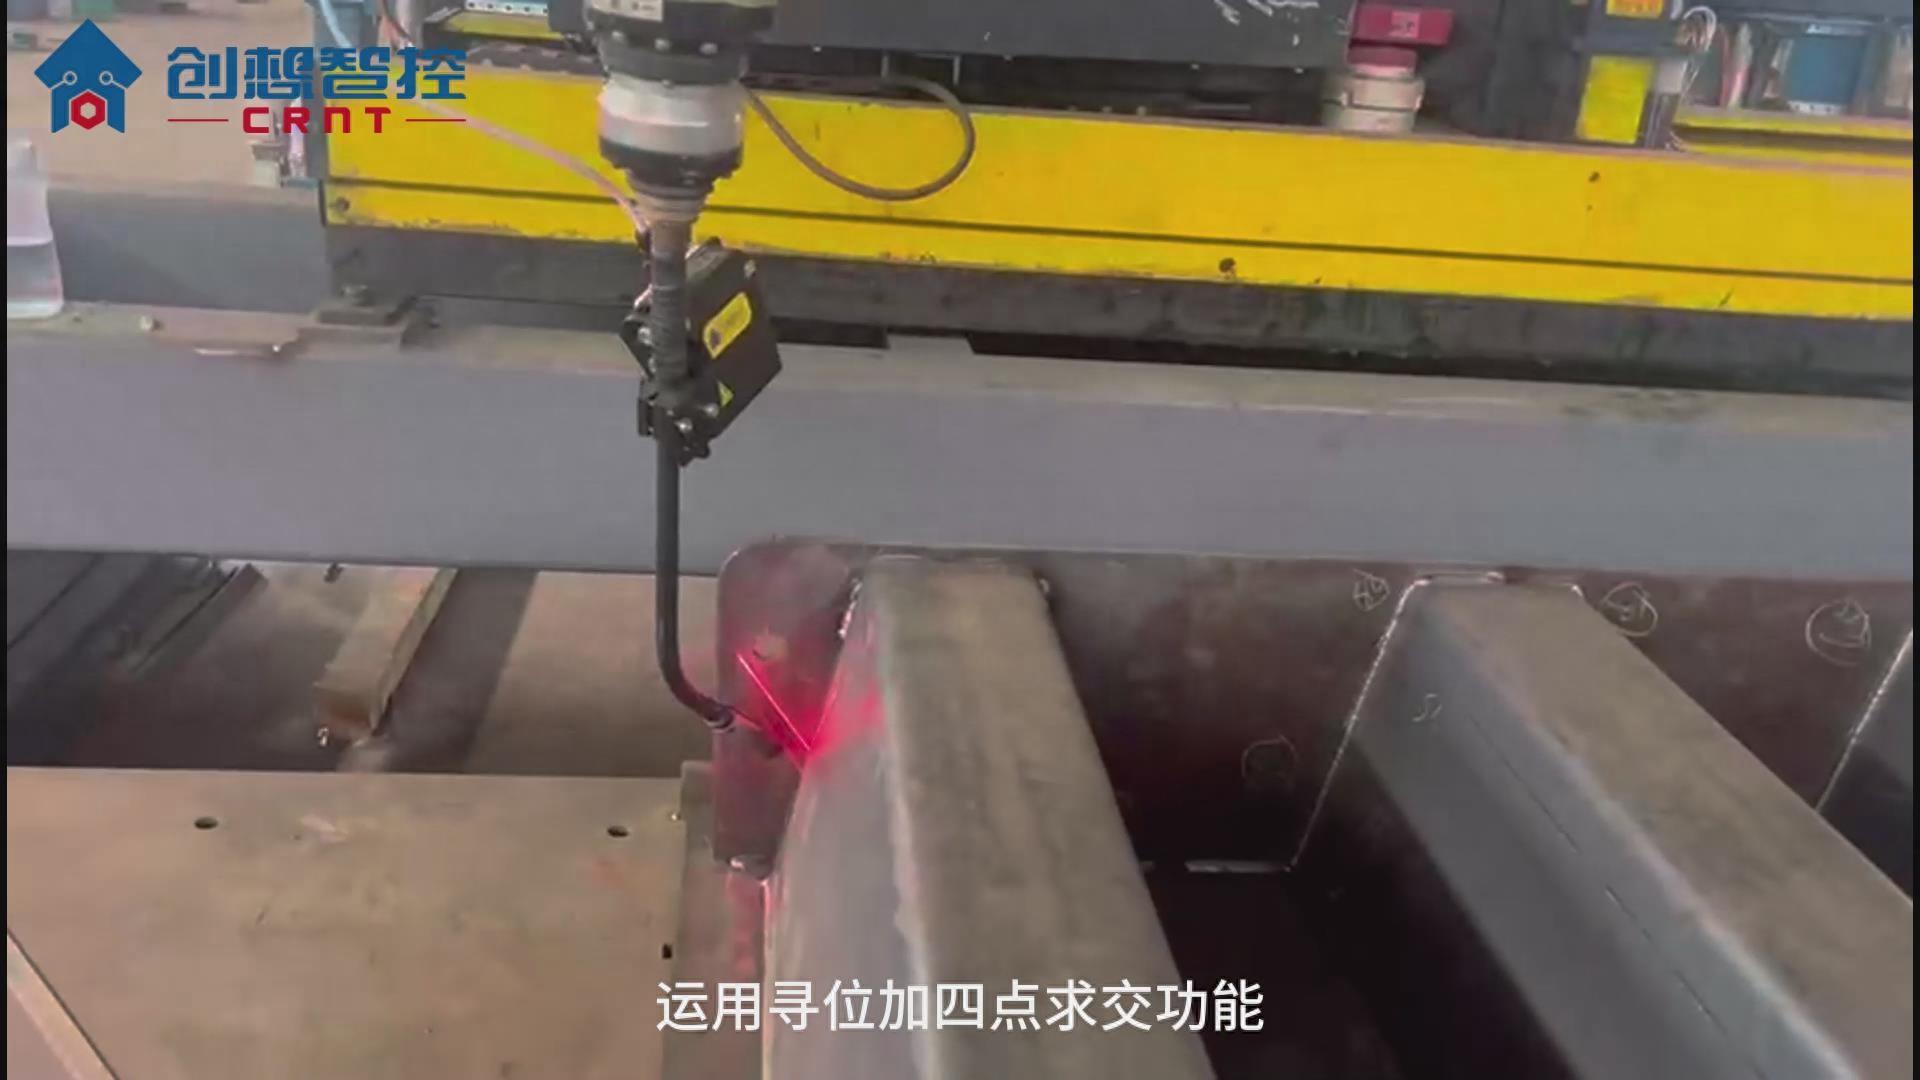 創想焊縫跟蹤系統適配研華寶元機器人自動化焊接汽車衡的應用